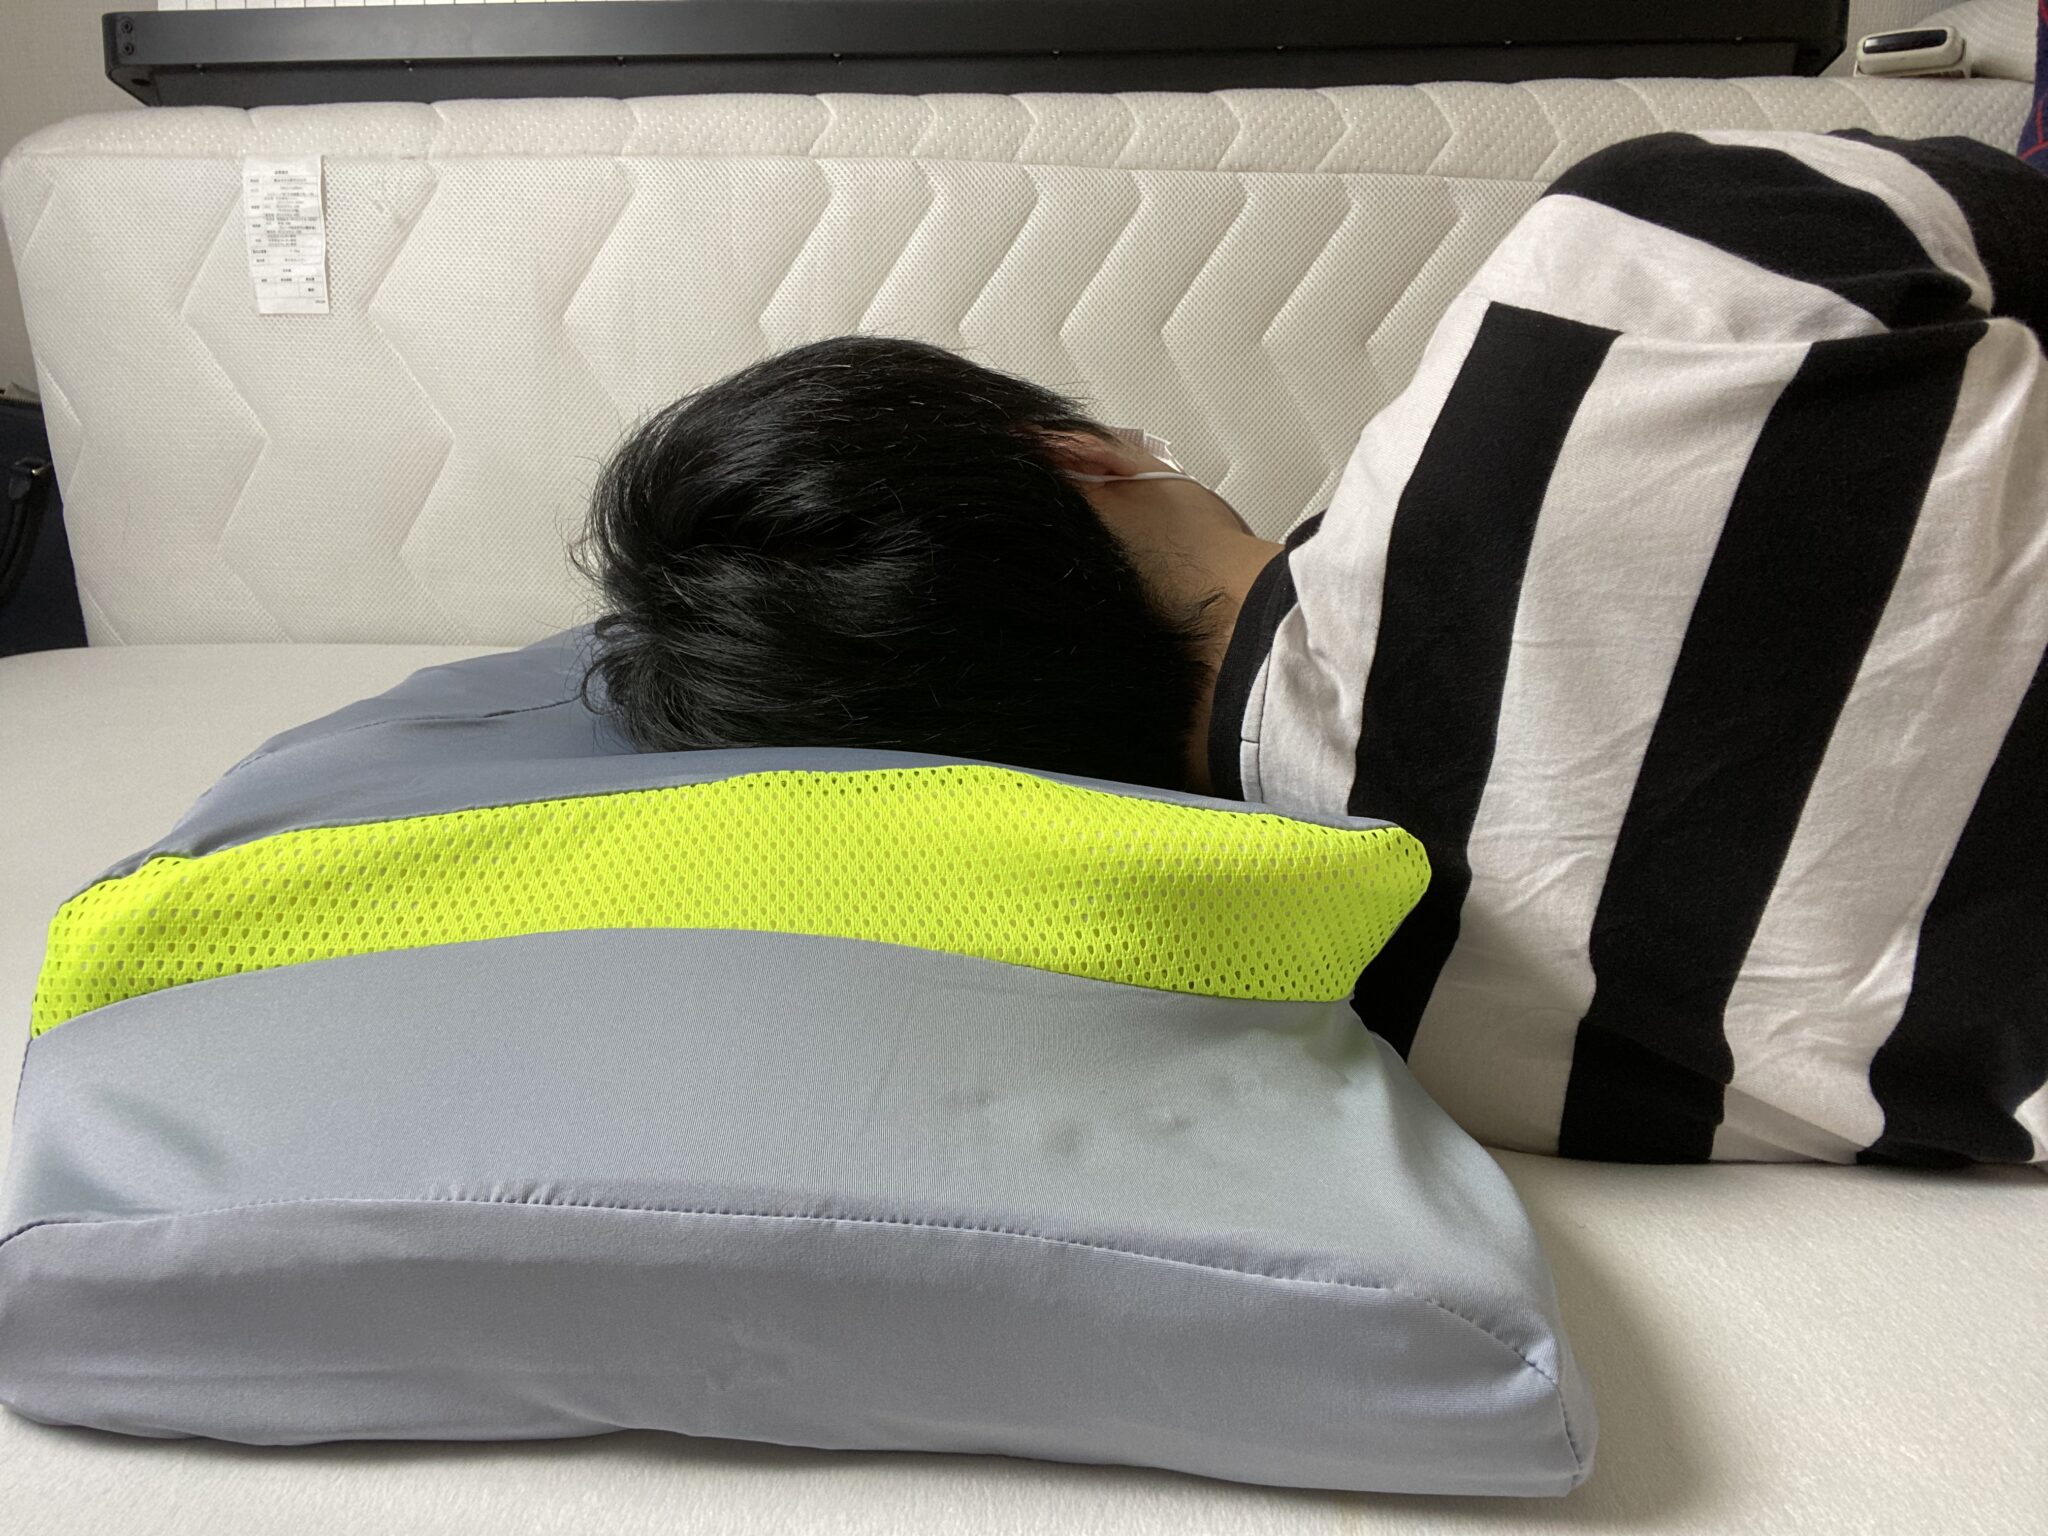 総代理店YOKONE Classic 横向き寝用枕 枕